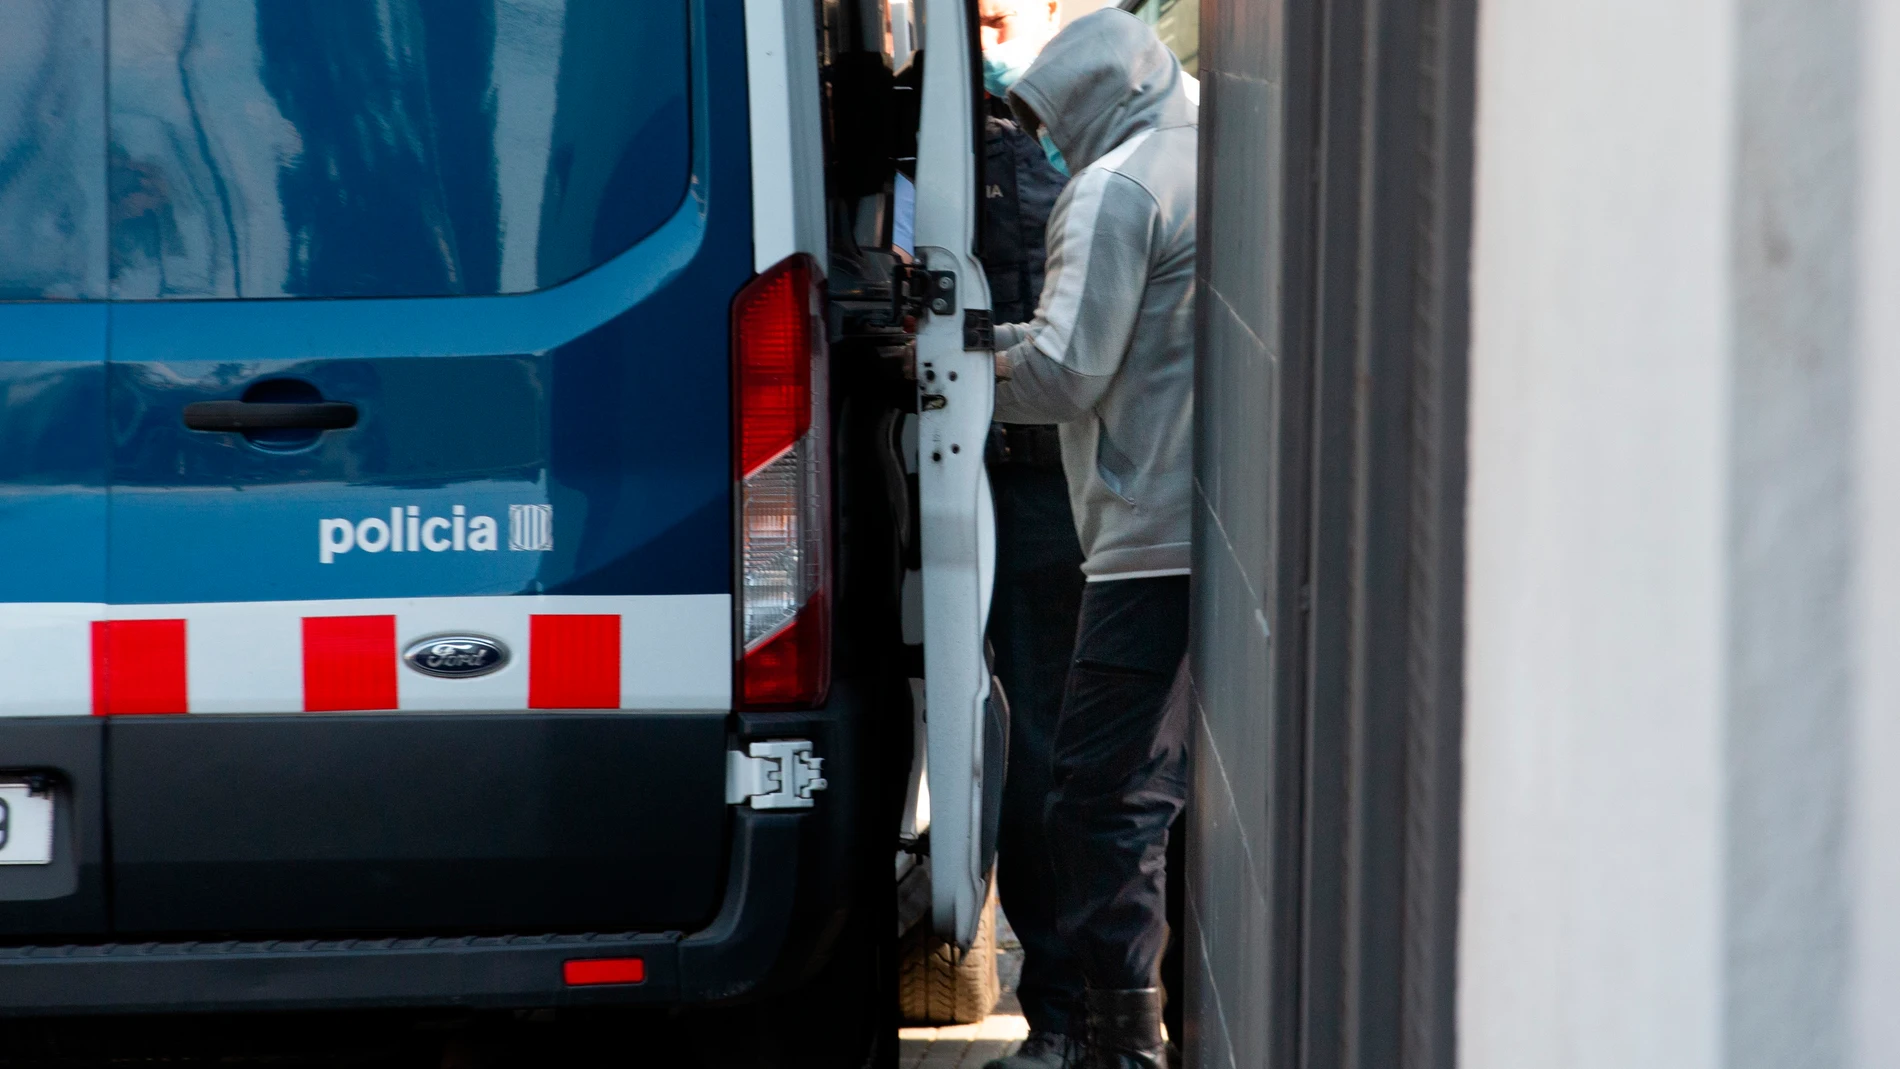 Uno de los detenidos es conducido a un furgón policial desde la comisaría de la Policía Local de Llinars del Vallés (Barcelona), donde los Mossos d' Esquadra han practicado por el momento cuatro detenciones en el marco de una operación contra una red de tráfico de marihuana centrada en esta población barcelonesa.EFE/Enric Fontcuberta